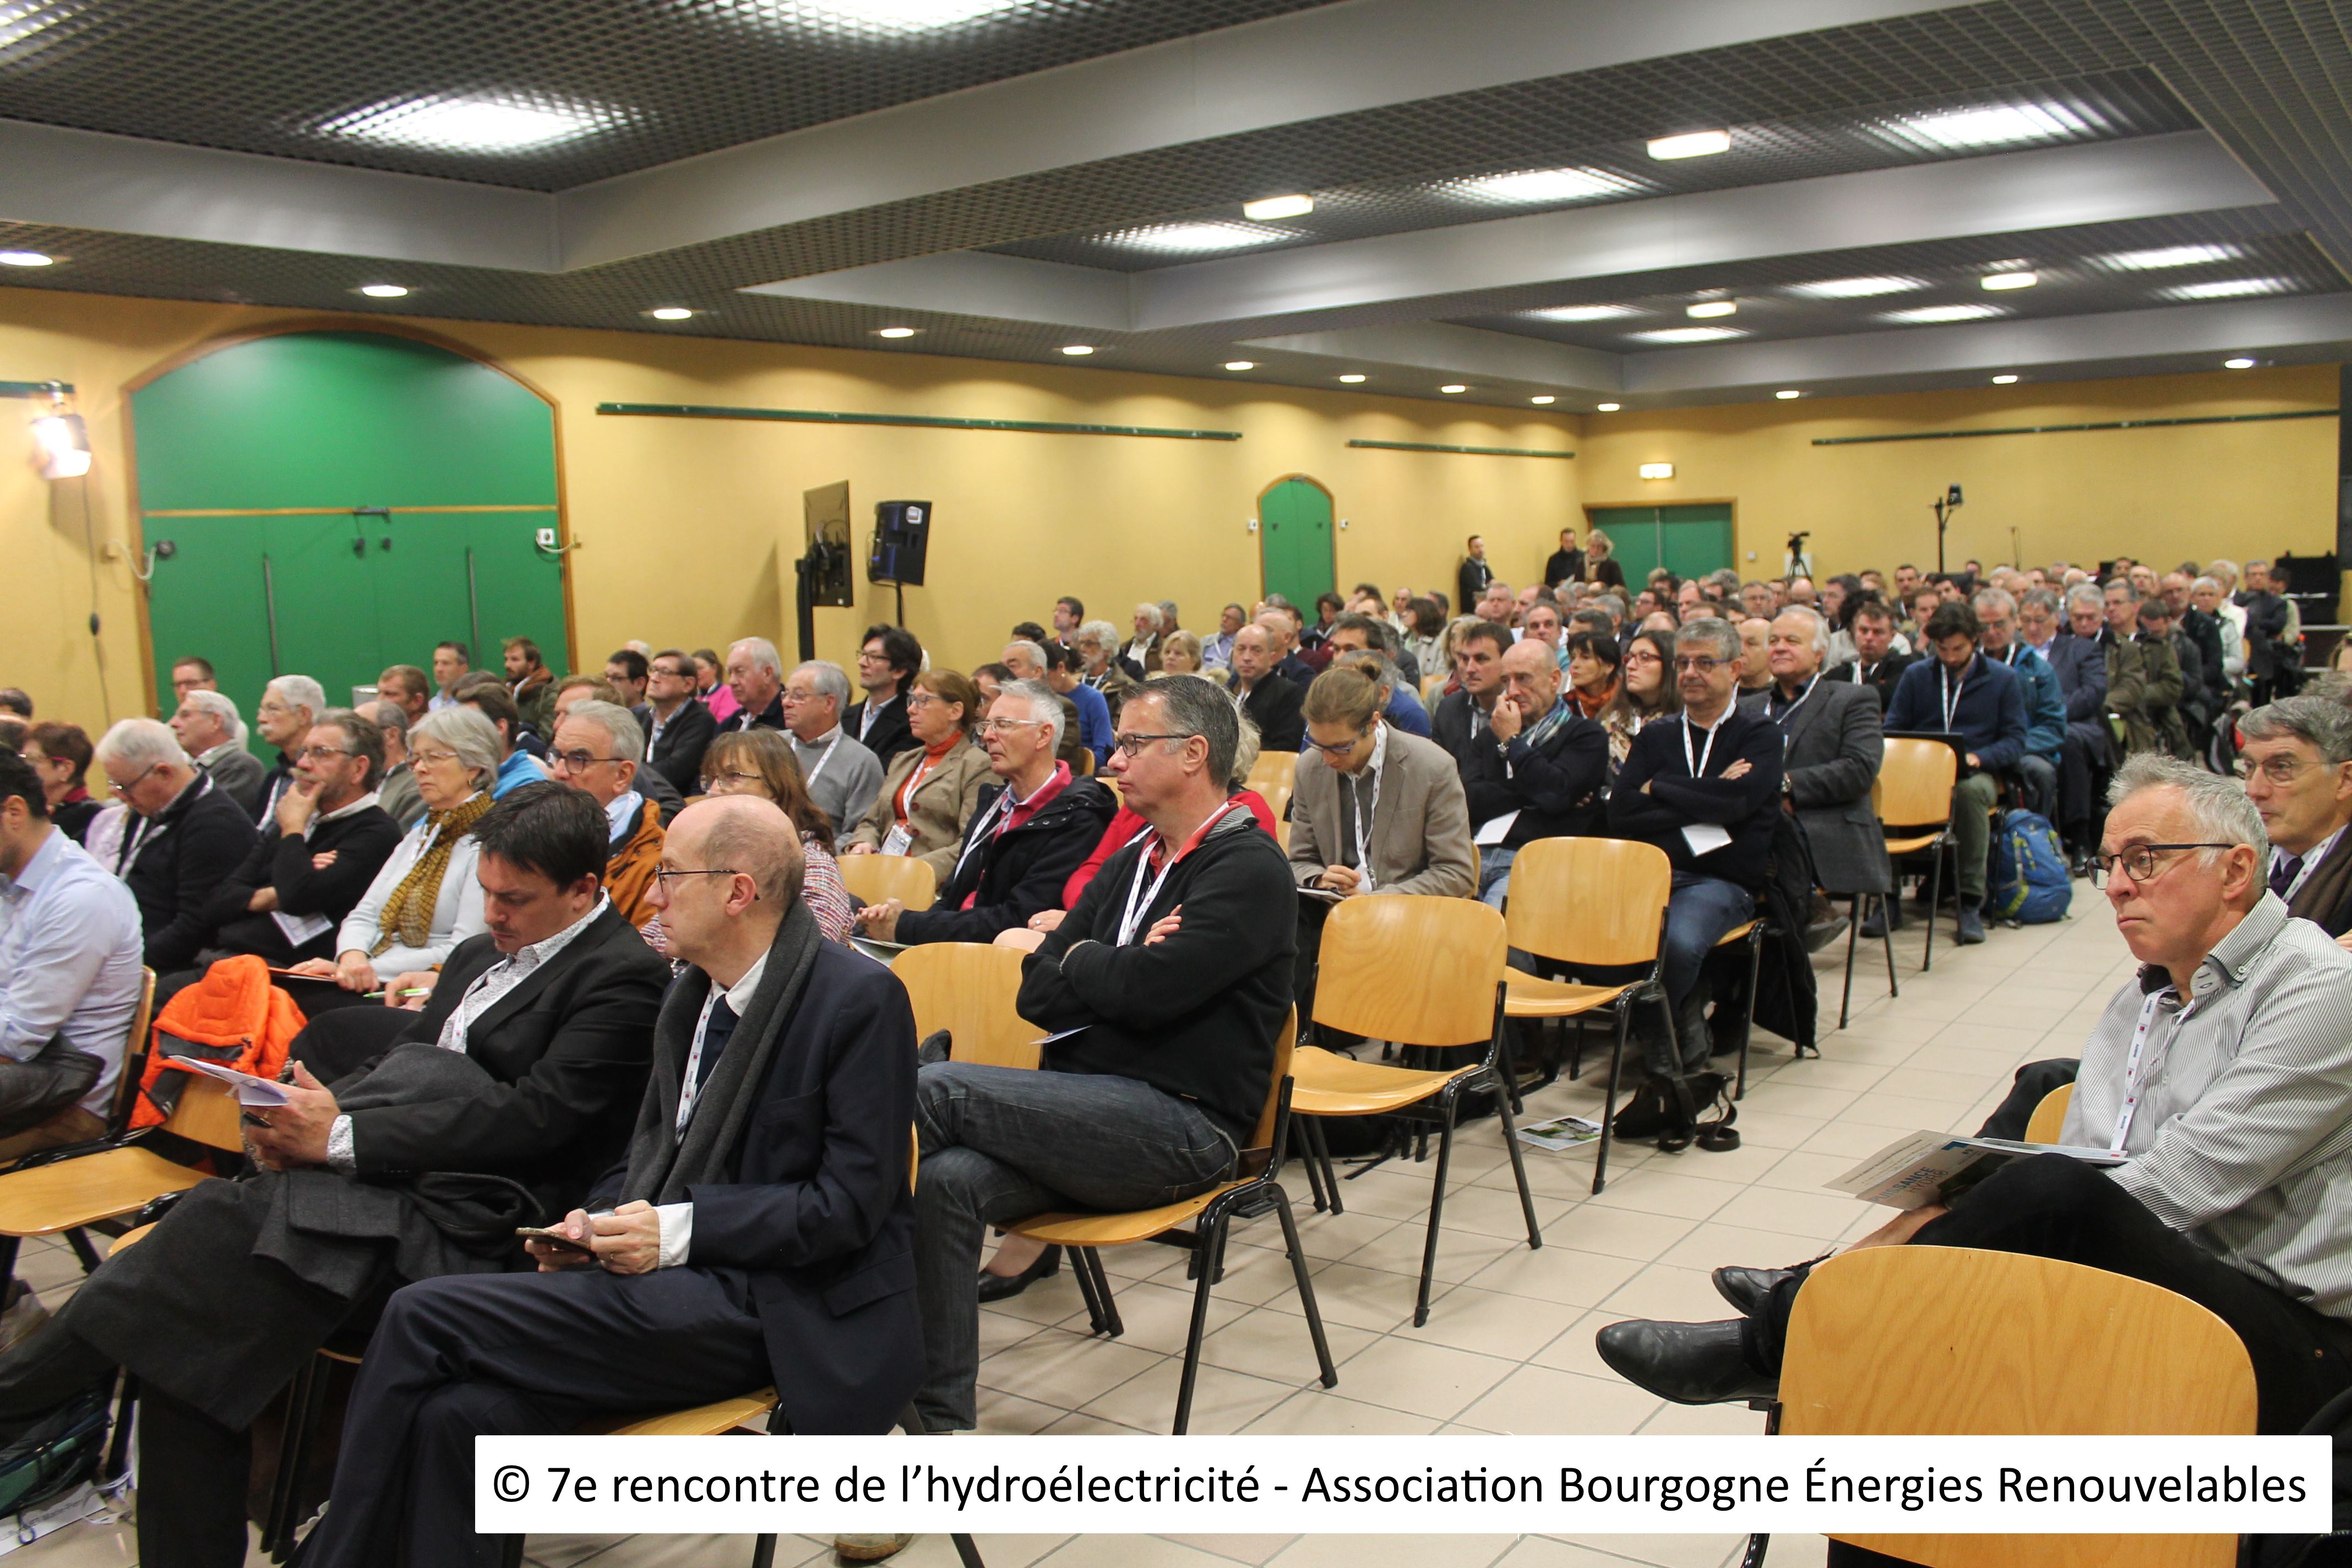 7 - © 7e rencontre de l’hydroélectricité - Association Bourgogne Énergies Renouvelables